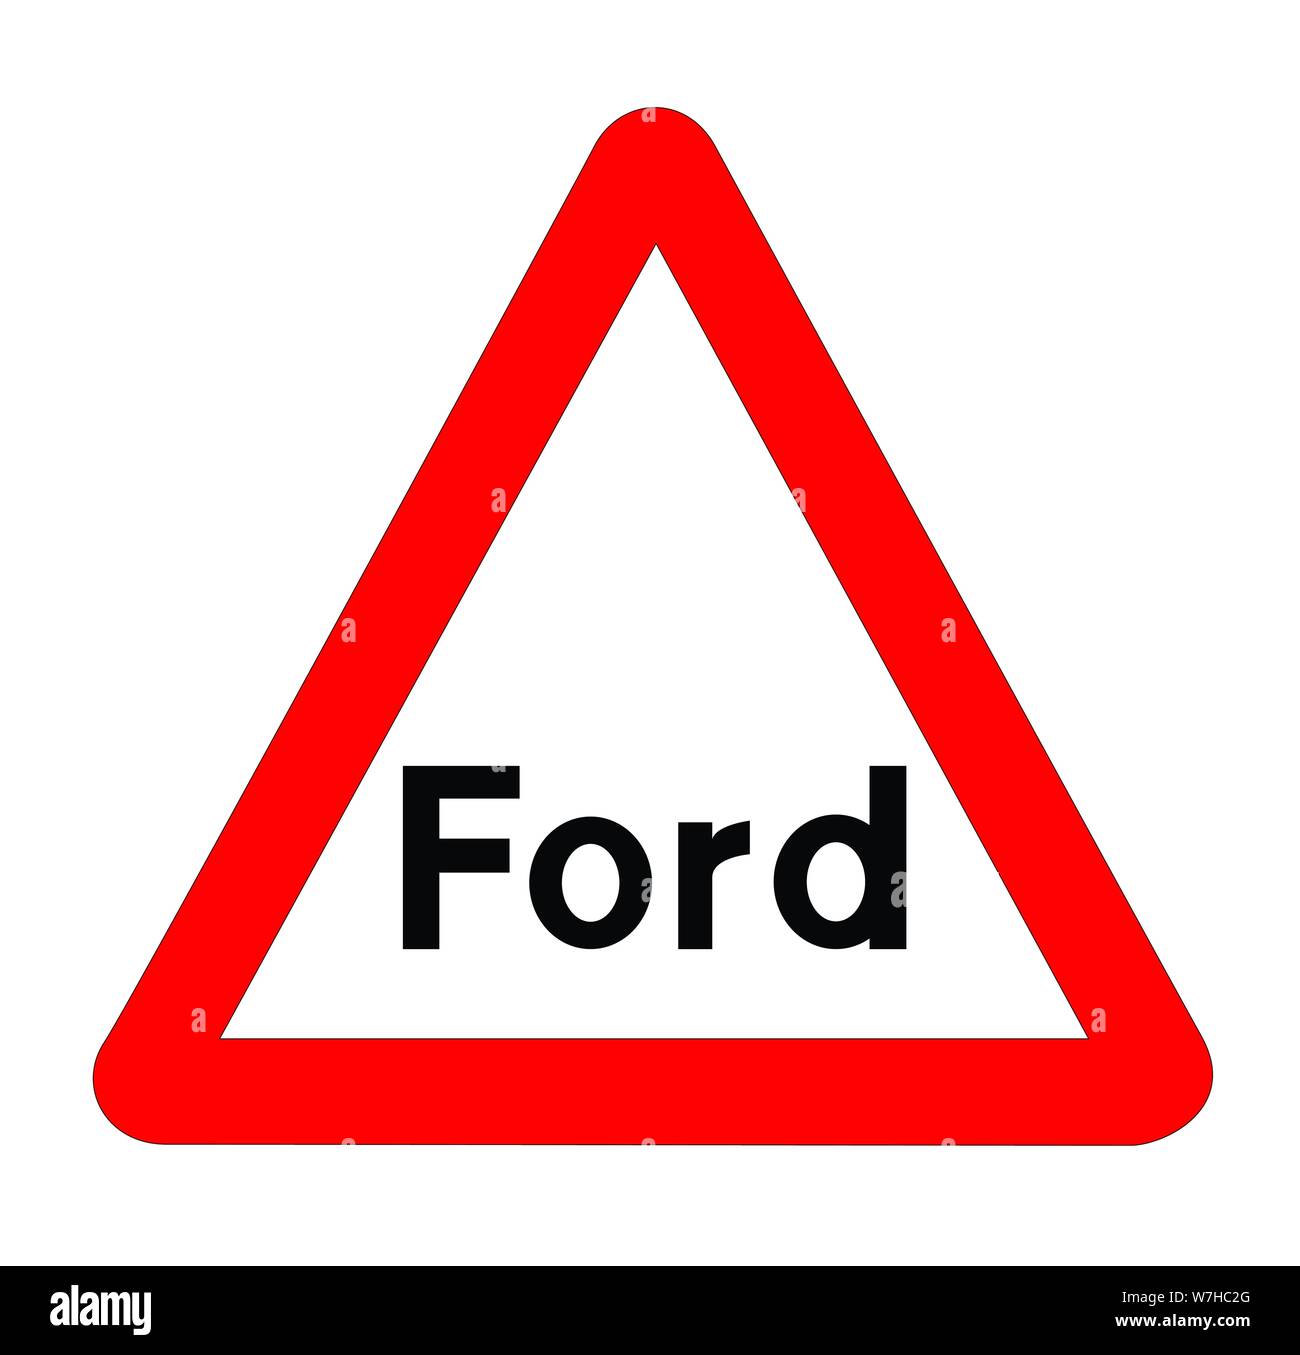 Das traditionelle "FORD" Dreieck Verkehr Zeichen isoliert auf weißem Hintergrund... Stock Vektor